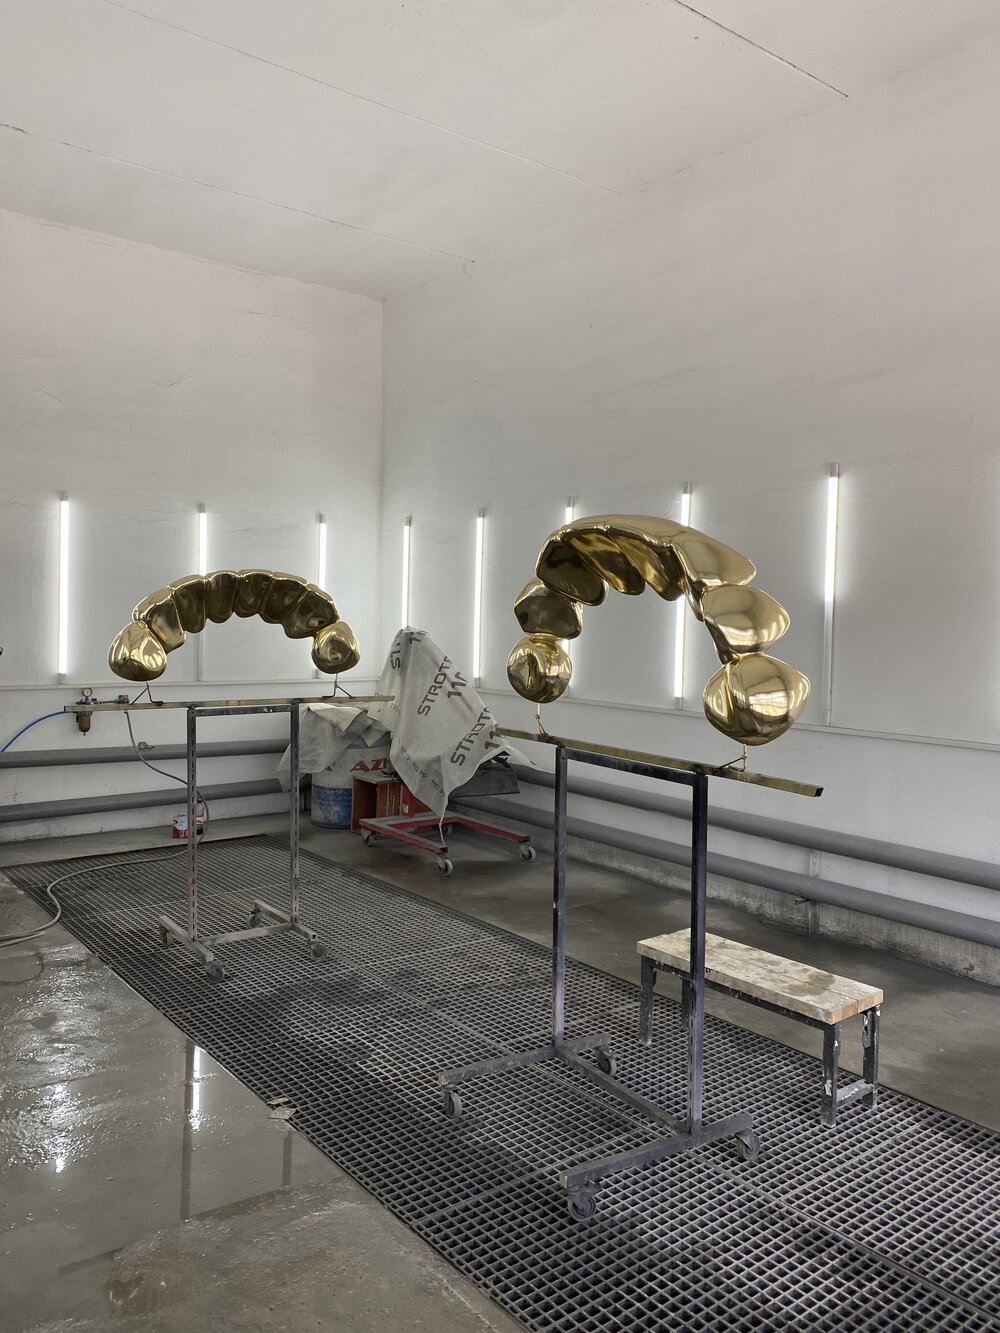 «Мій скарб», вигляд скульптур під час метализації, 2019